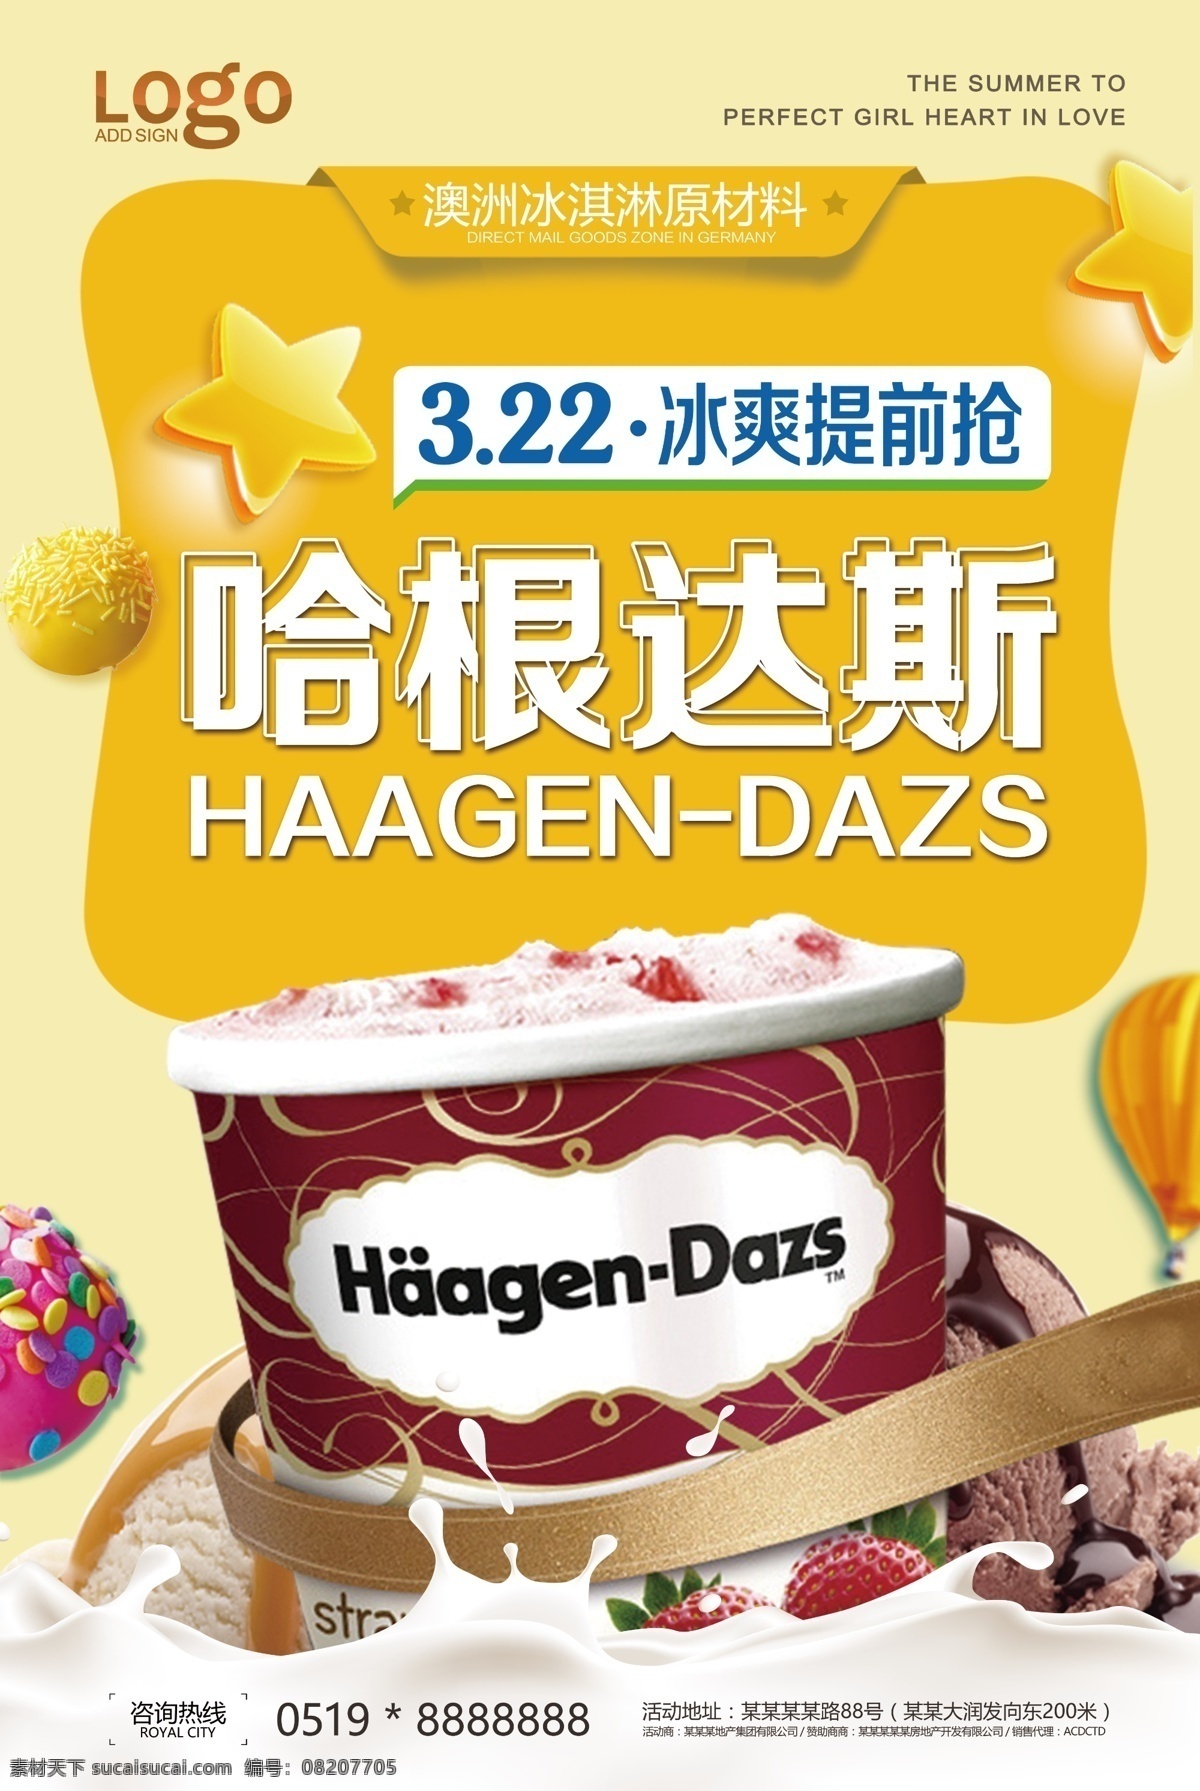 哈根达斯「臻爱法甜」甜品杯冰淇淋包装设计-undefined-FoodTalks食品产品库